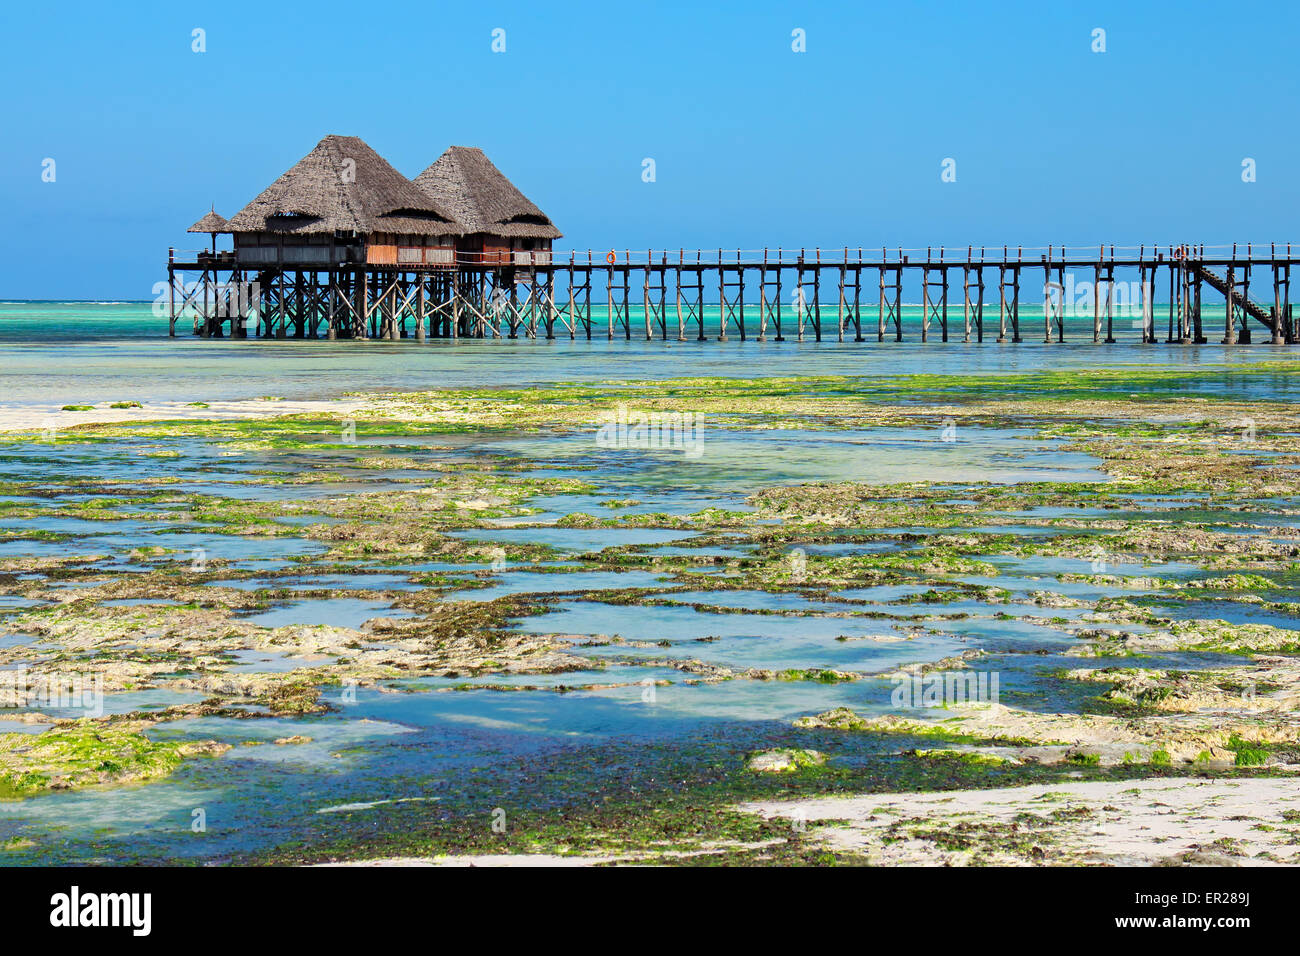 Il molo di legno e tetti di paglia su una spiaggia tropicale, isola di Zanzibar Foto Stock